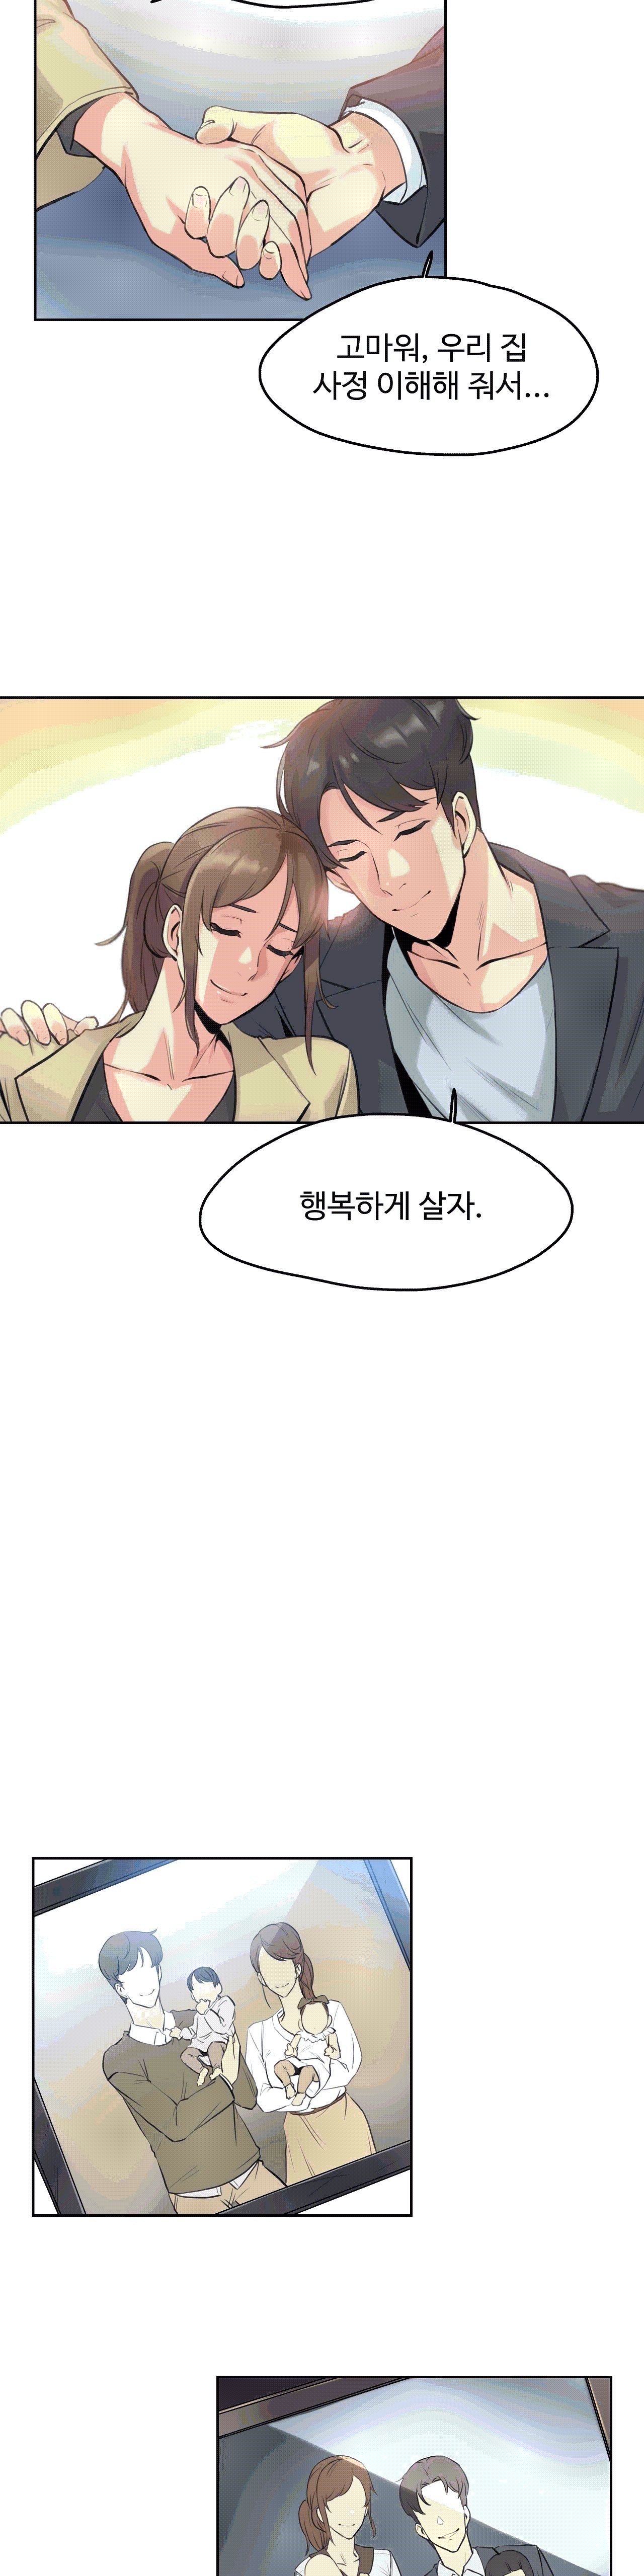 대리 부 | Surrogate Father 6 [Korean] Manhwa 25